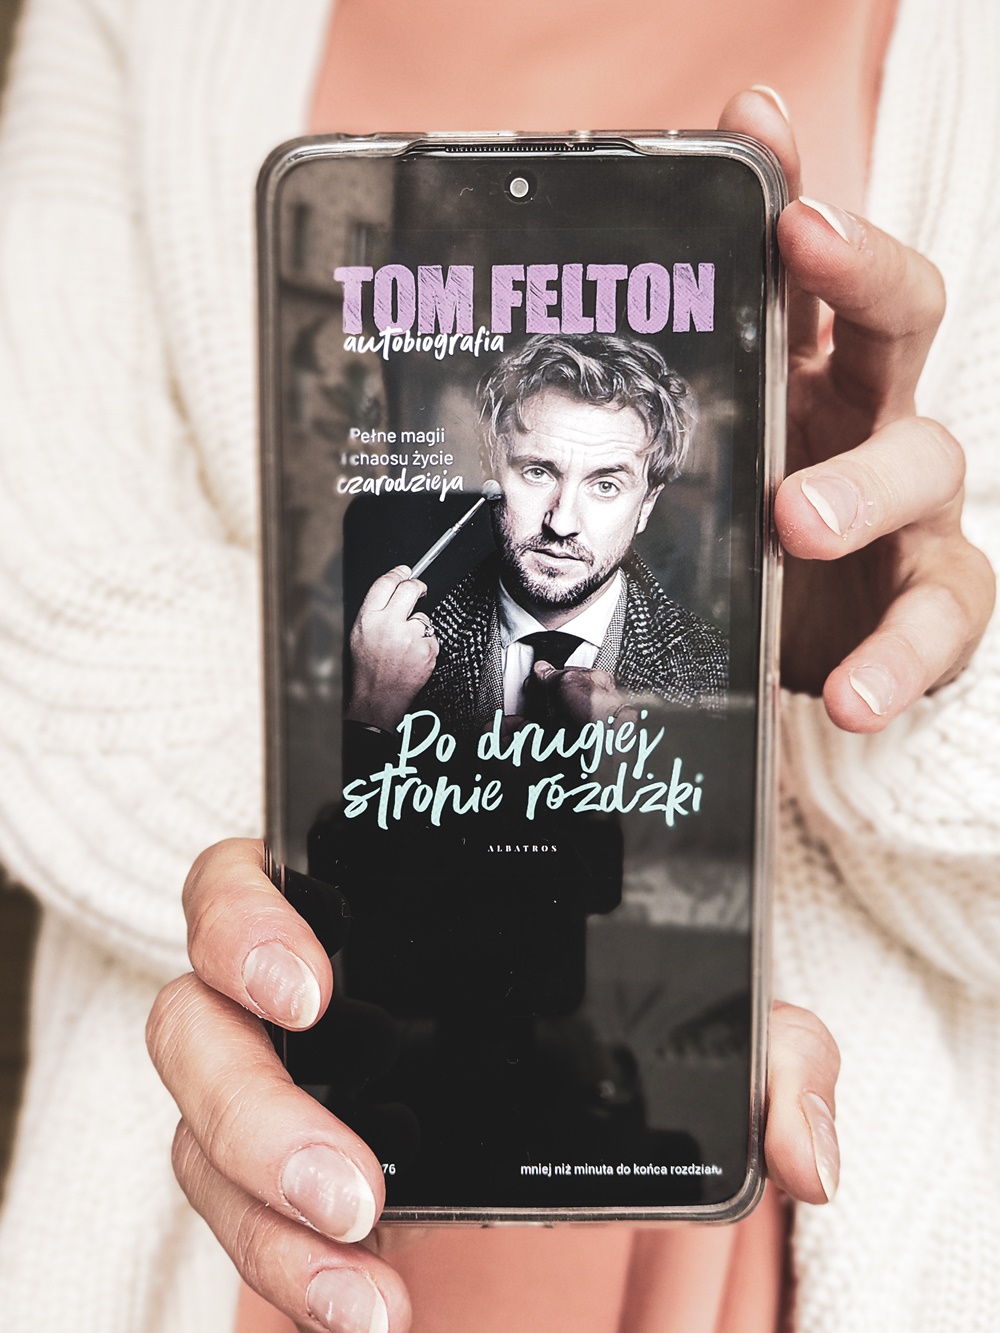 Tom Felton - "Po drugiej stronie różdżki" autobiografia czarodzieja.